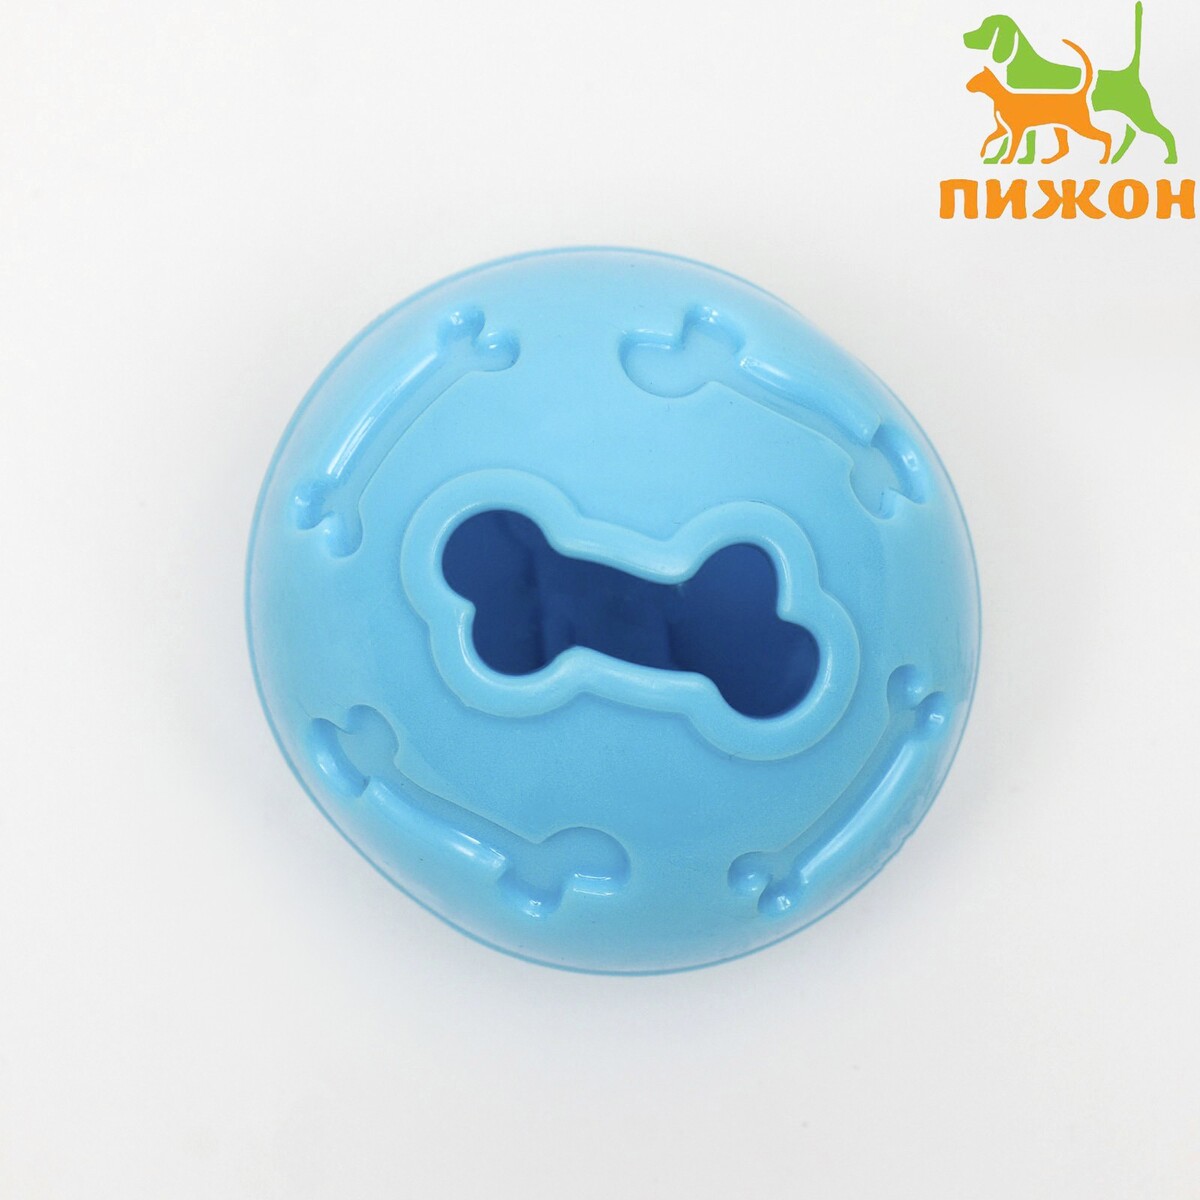 Мяч под лакомства, утолщенный tpr, 7 см, голубой игрушка под лакомства